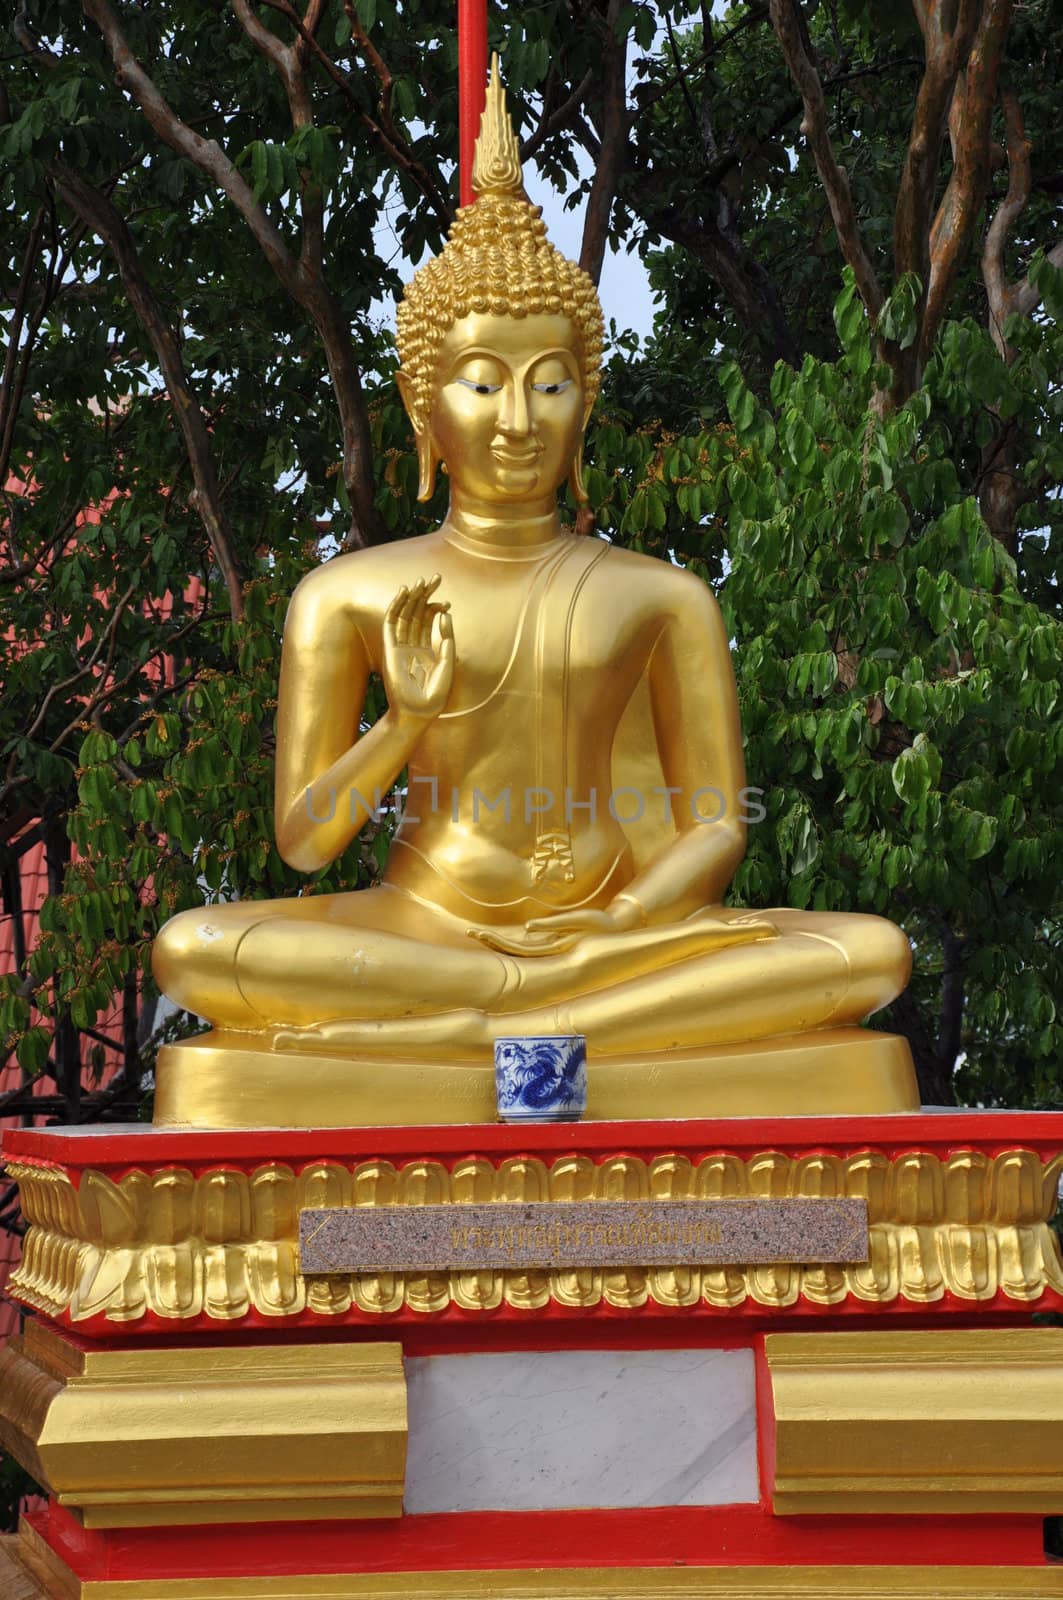 Big Buddha site in Pattaya, Thailand by sainaniritu